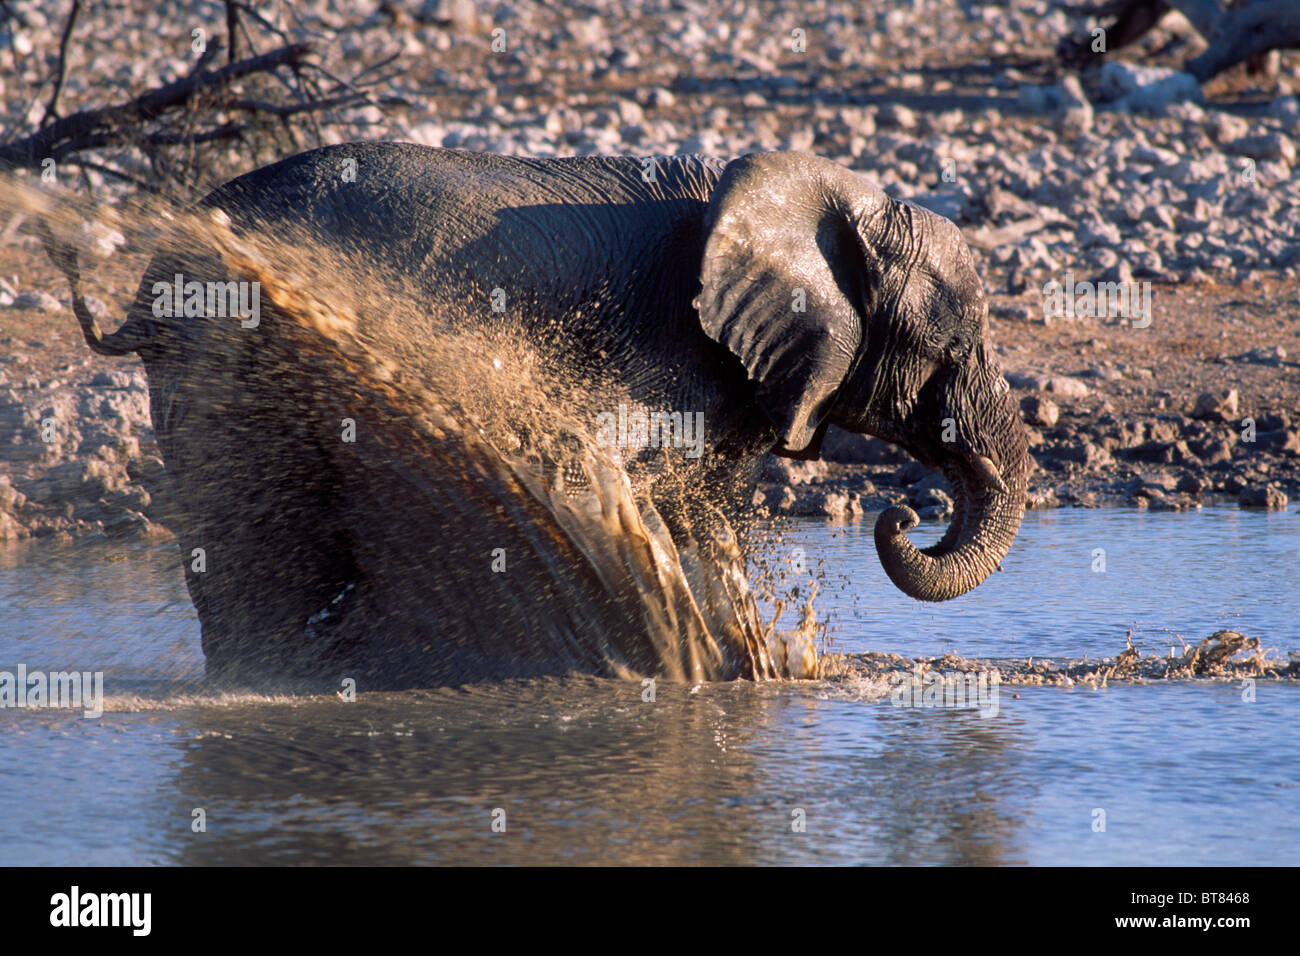 African Bush Elephant (Loxodonta africana) bathing in a waterhole, Etosha National Park, Namibia, Africa Stock Photo